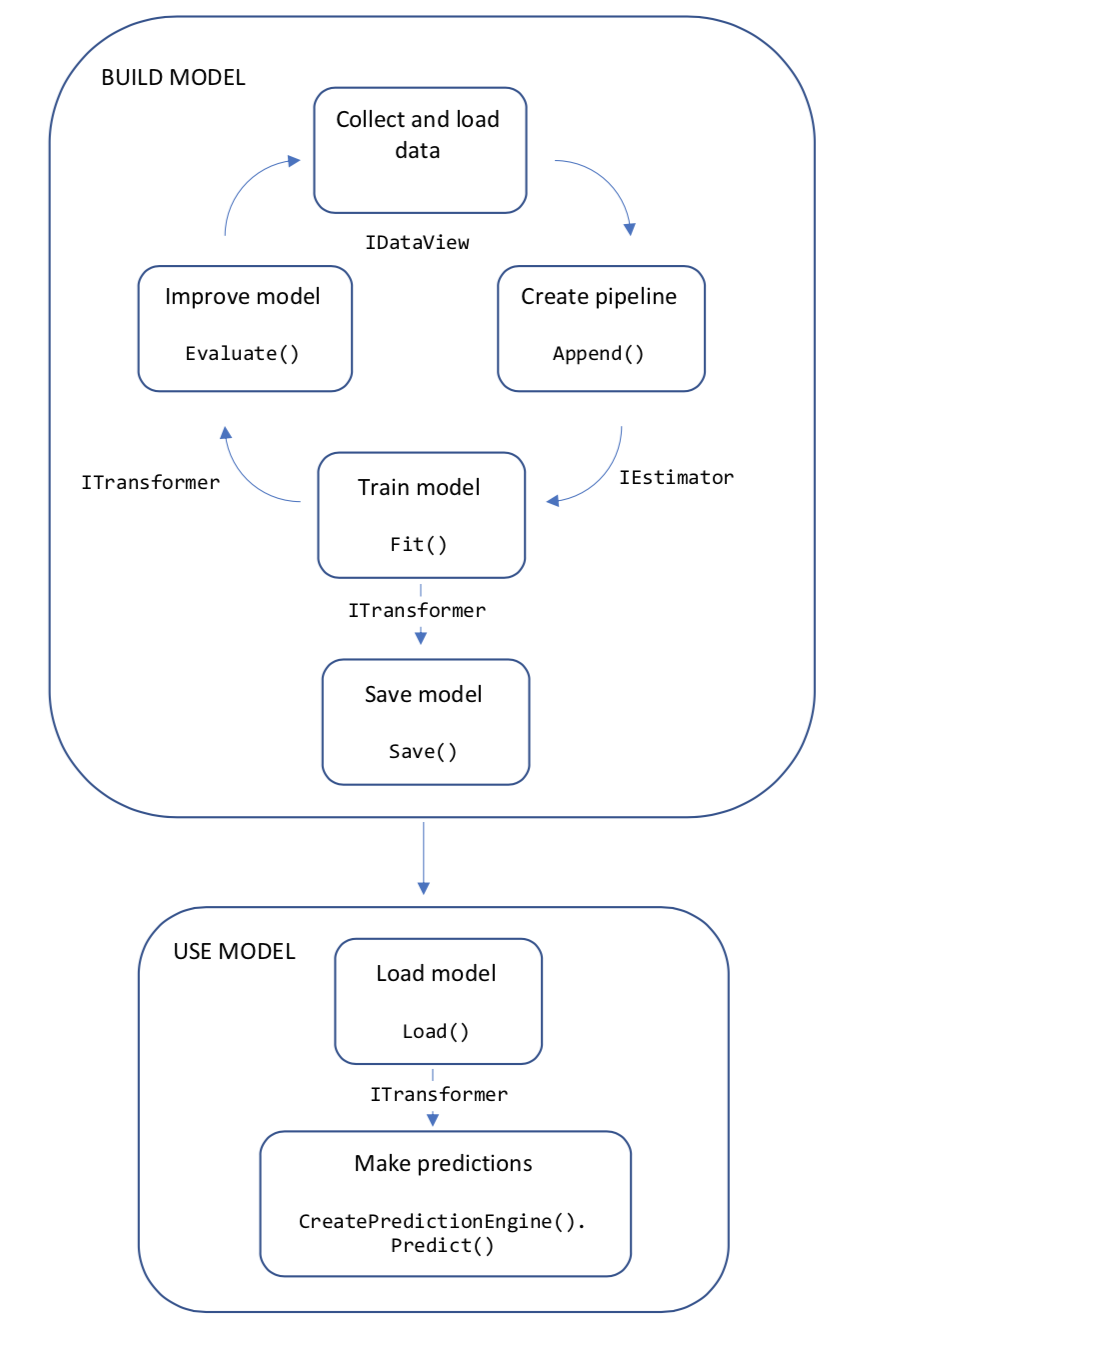 ML.NET tok vývoje aplikací, včetně komponent pro generování dat, vývoj kanálů, trénování modelů, vyhodnocení modelu a využití modelu